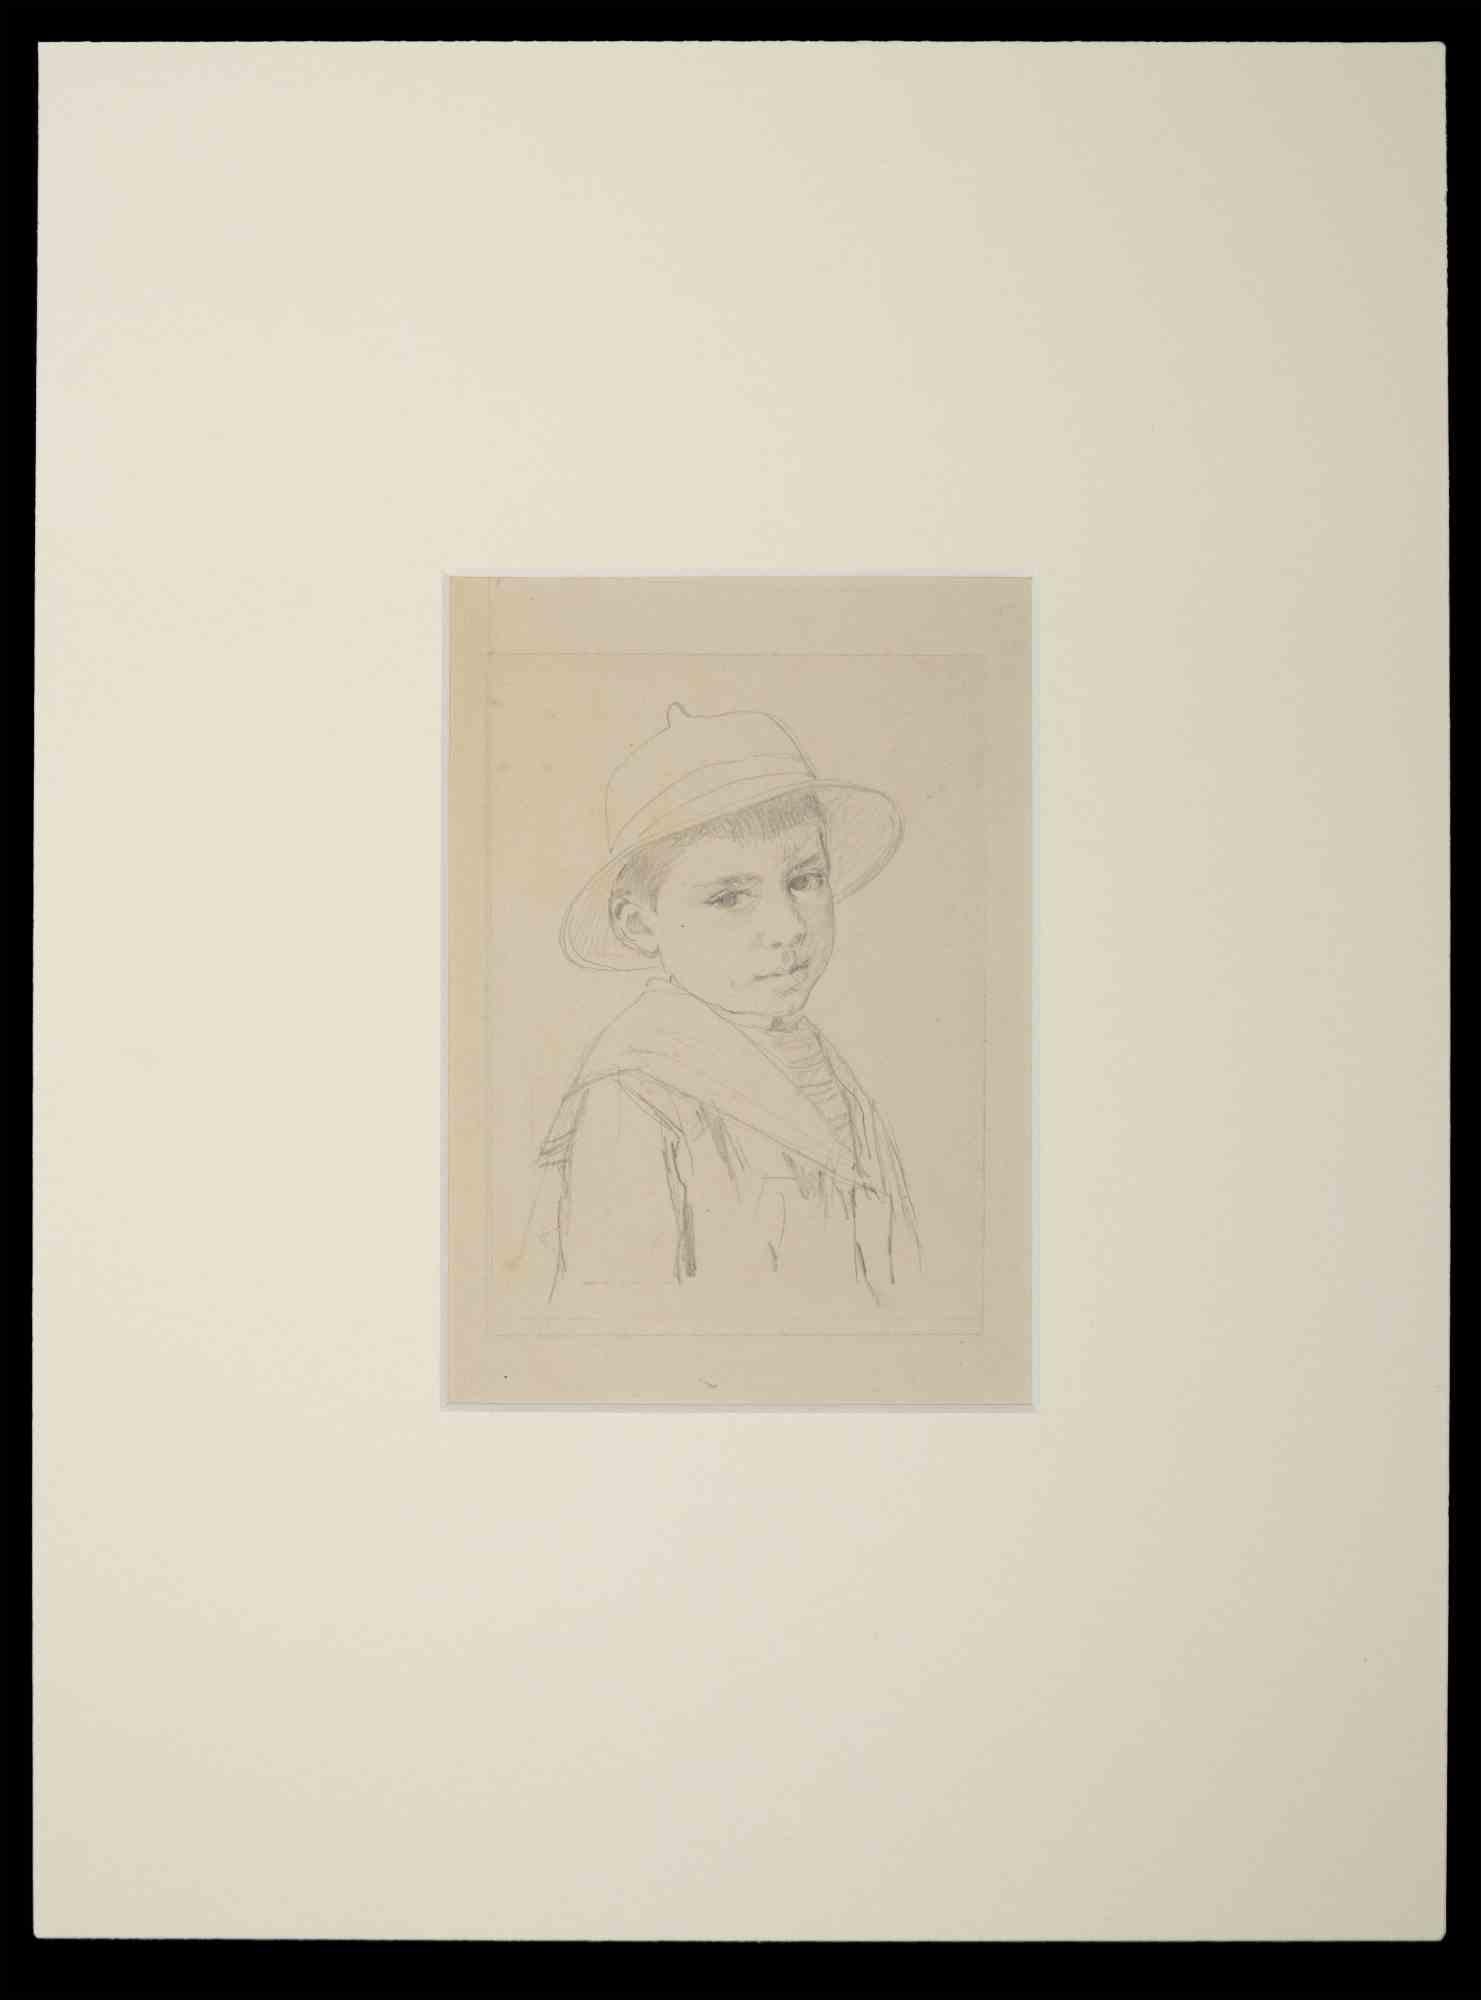 Porträt eines jungen Jungen - Originalzeichnung von L.E. dan - Anfang des 20. Jahrhunderts